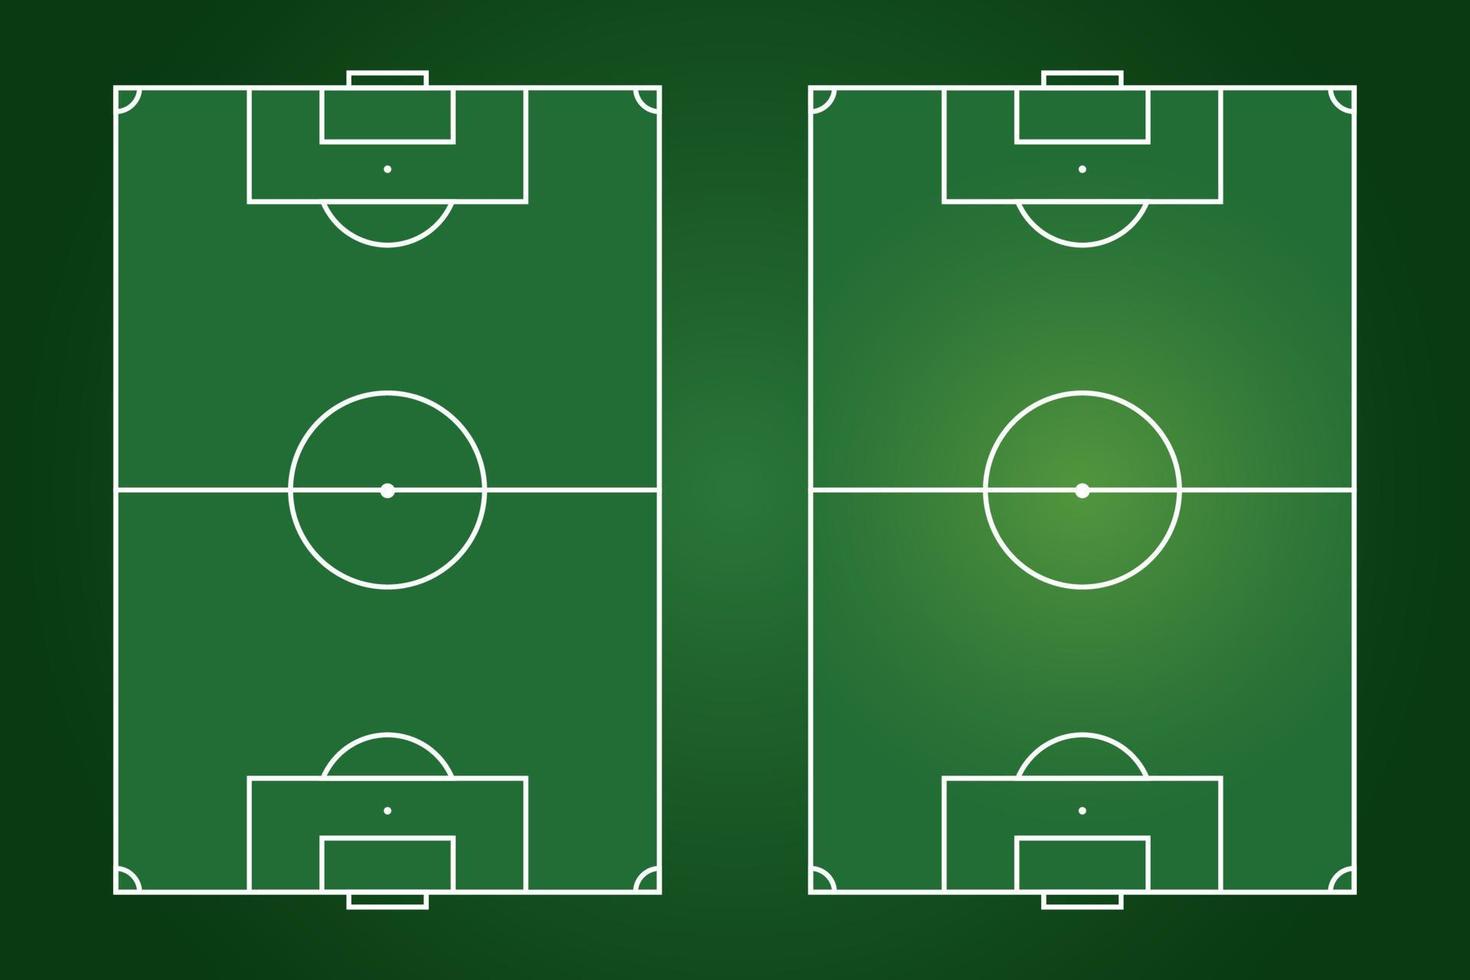 diseño plano de campo de fútbol, ilustración gráfica de campo de fútbol, vector de cancha de fútbol y diseño.